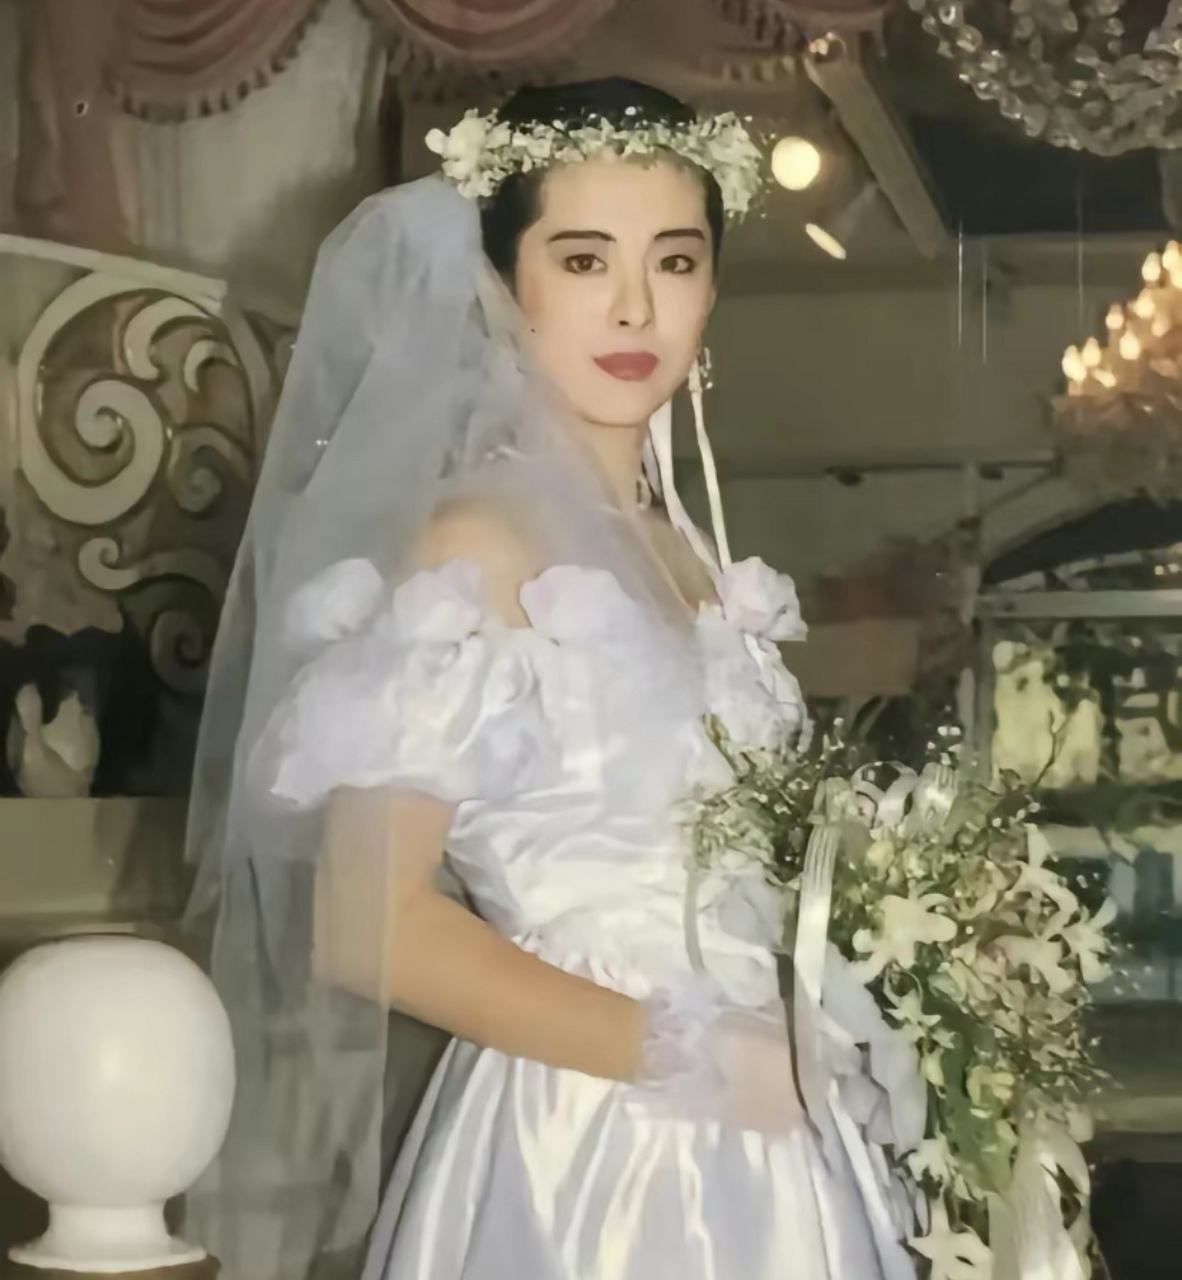 王祖贤婚纱造型,确实很灵动,头上戴花环很森系,眉目如画,那个年代的